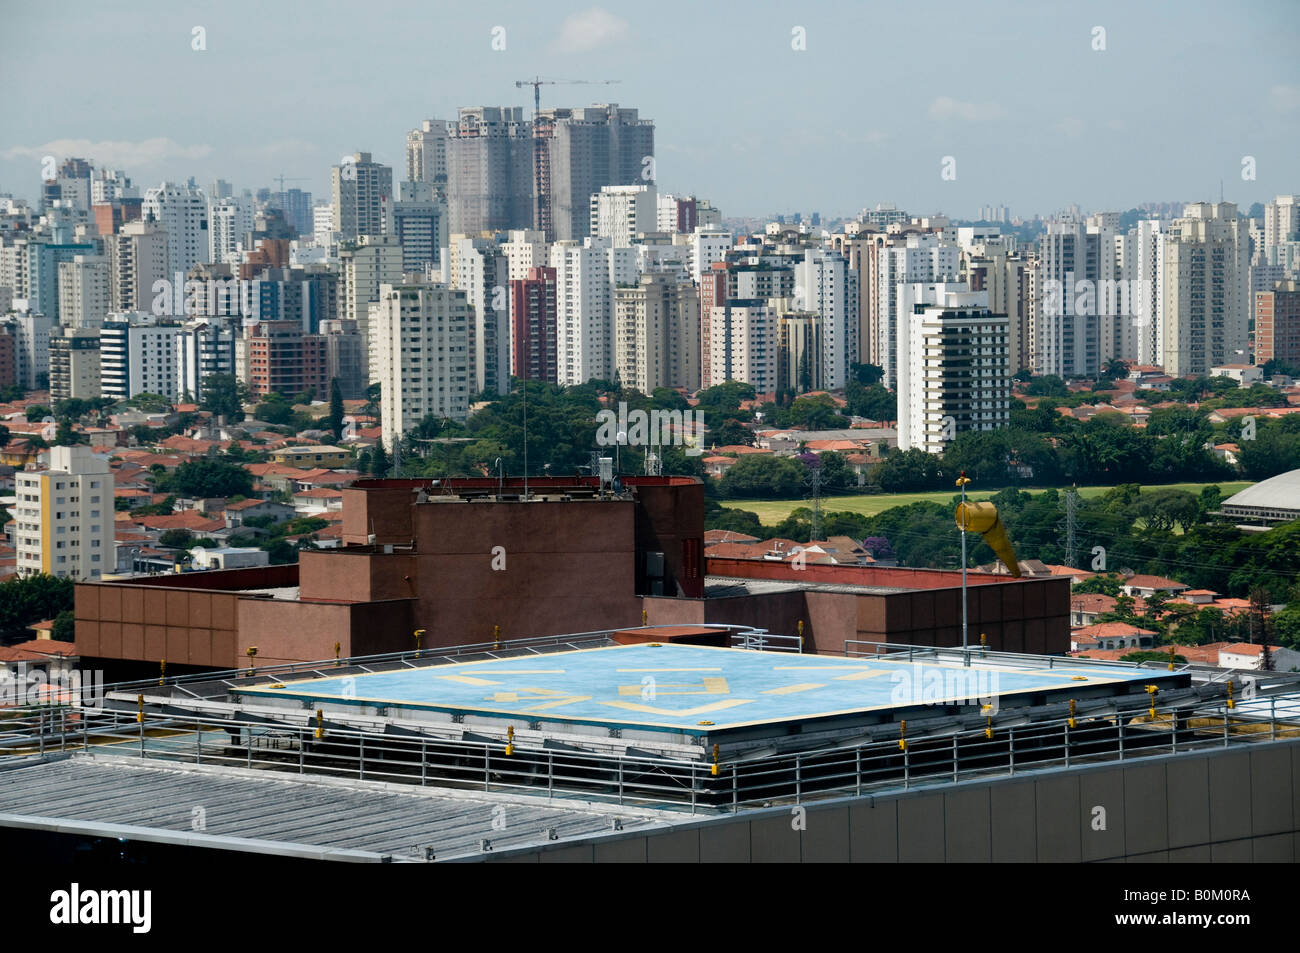 Hubschrauberlandeplatz auf dem Dach auf Berrini Avenue Region S o Paulo SP 14 02 08 Sao Paulo ist bekannt, dass die zweitgrößte Flotte von Hubschraubern Stockfoto